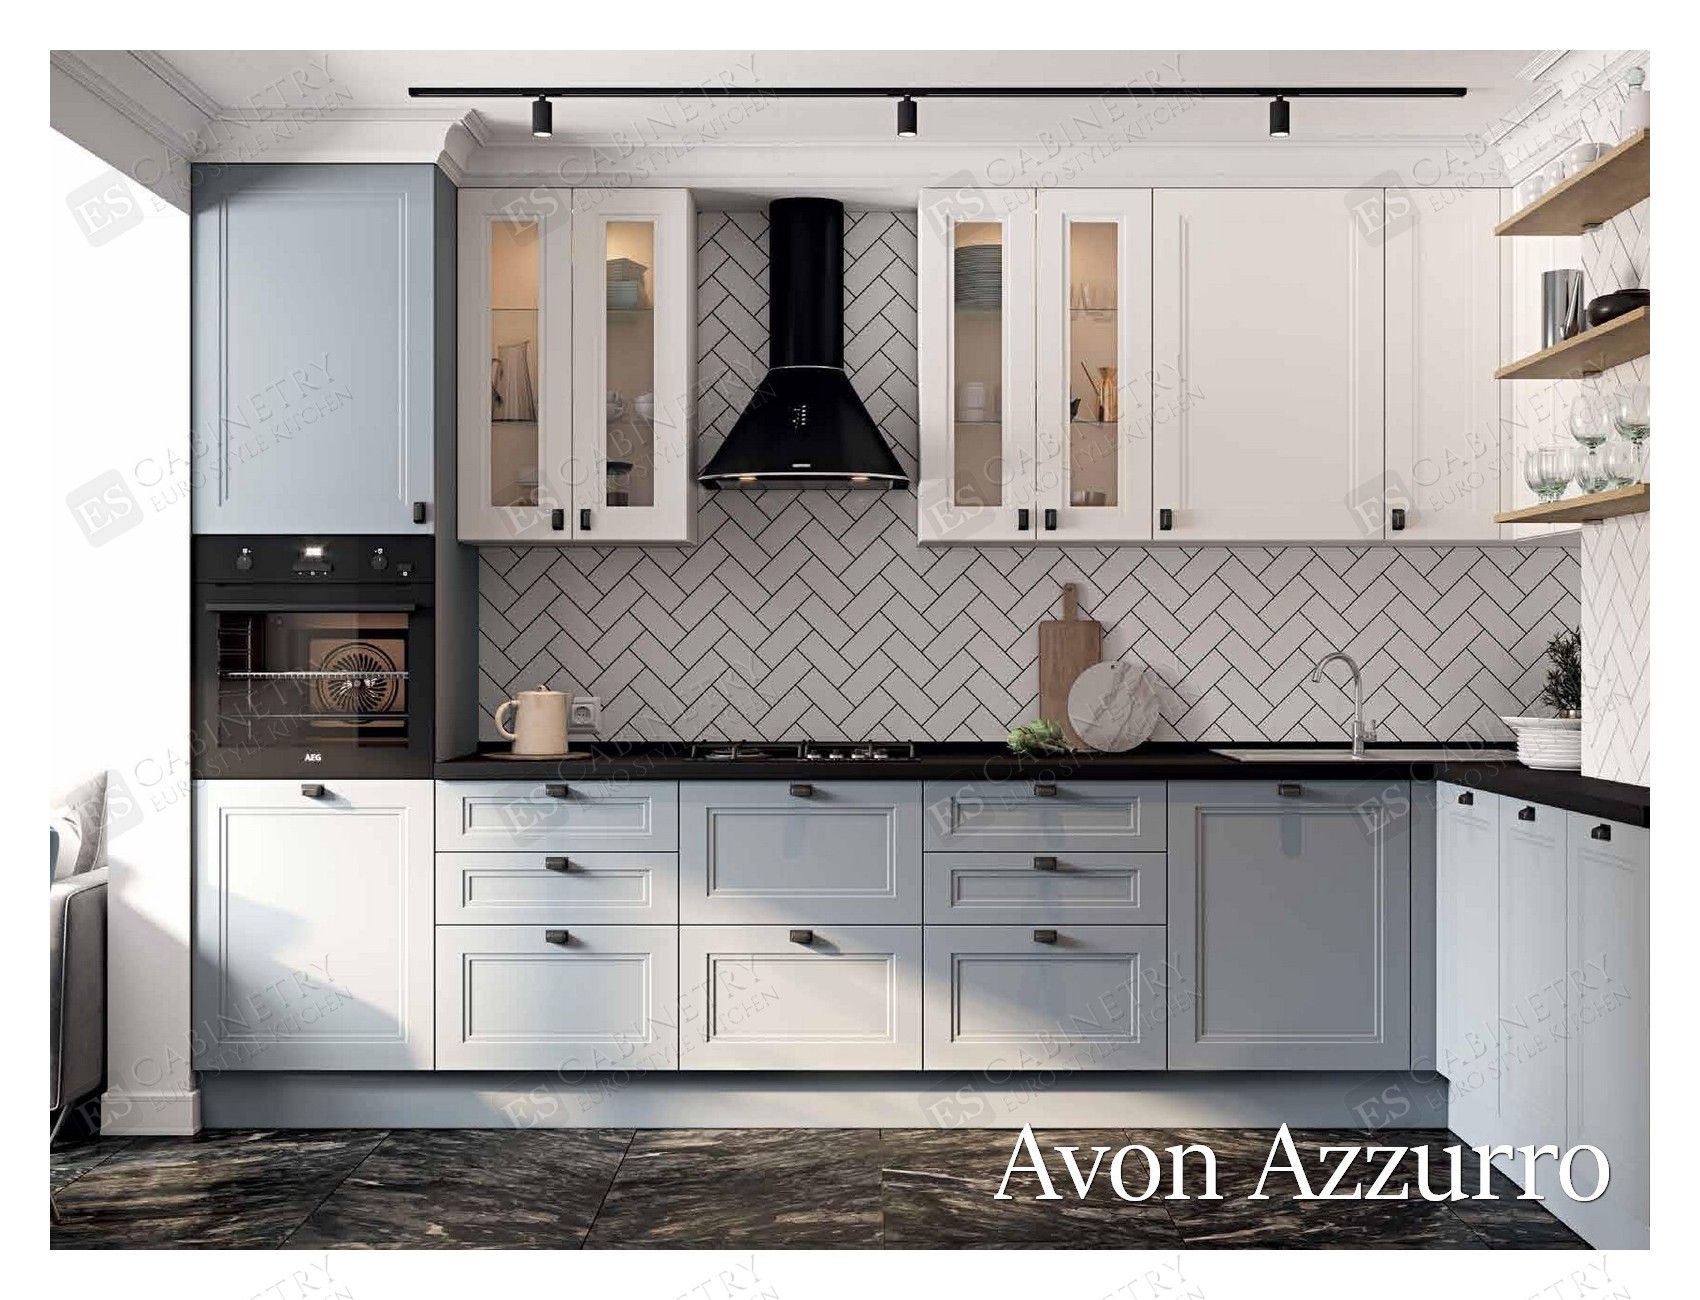 Avon Azzurro | Euro kitchen design